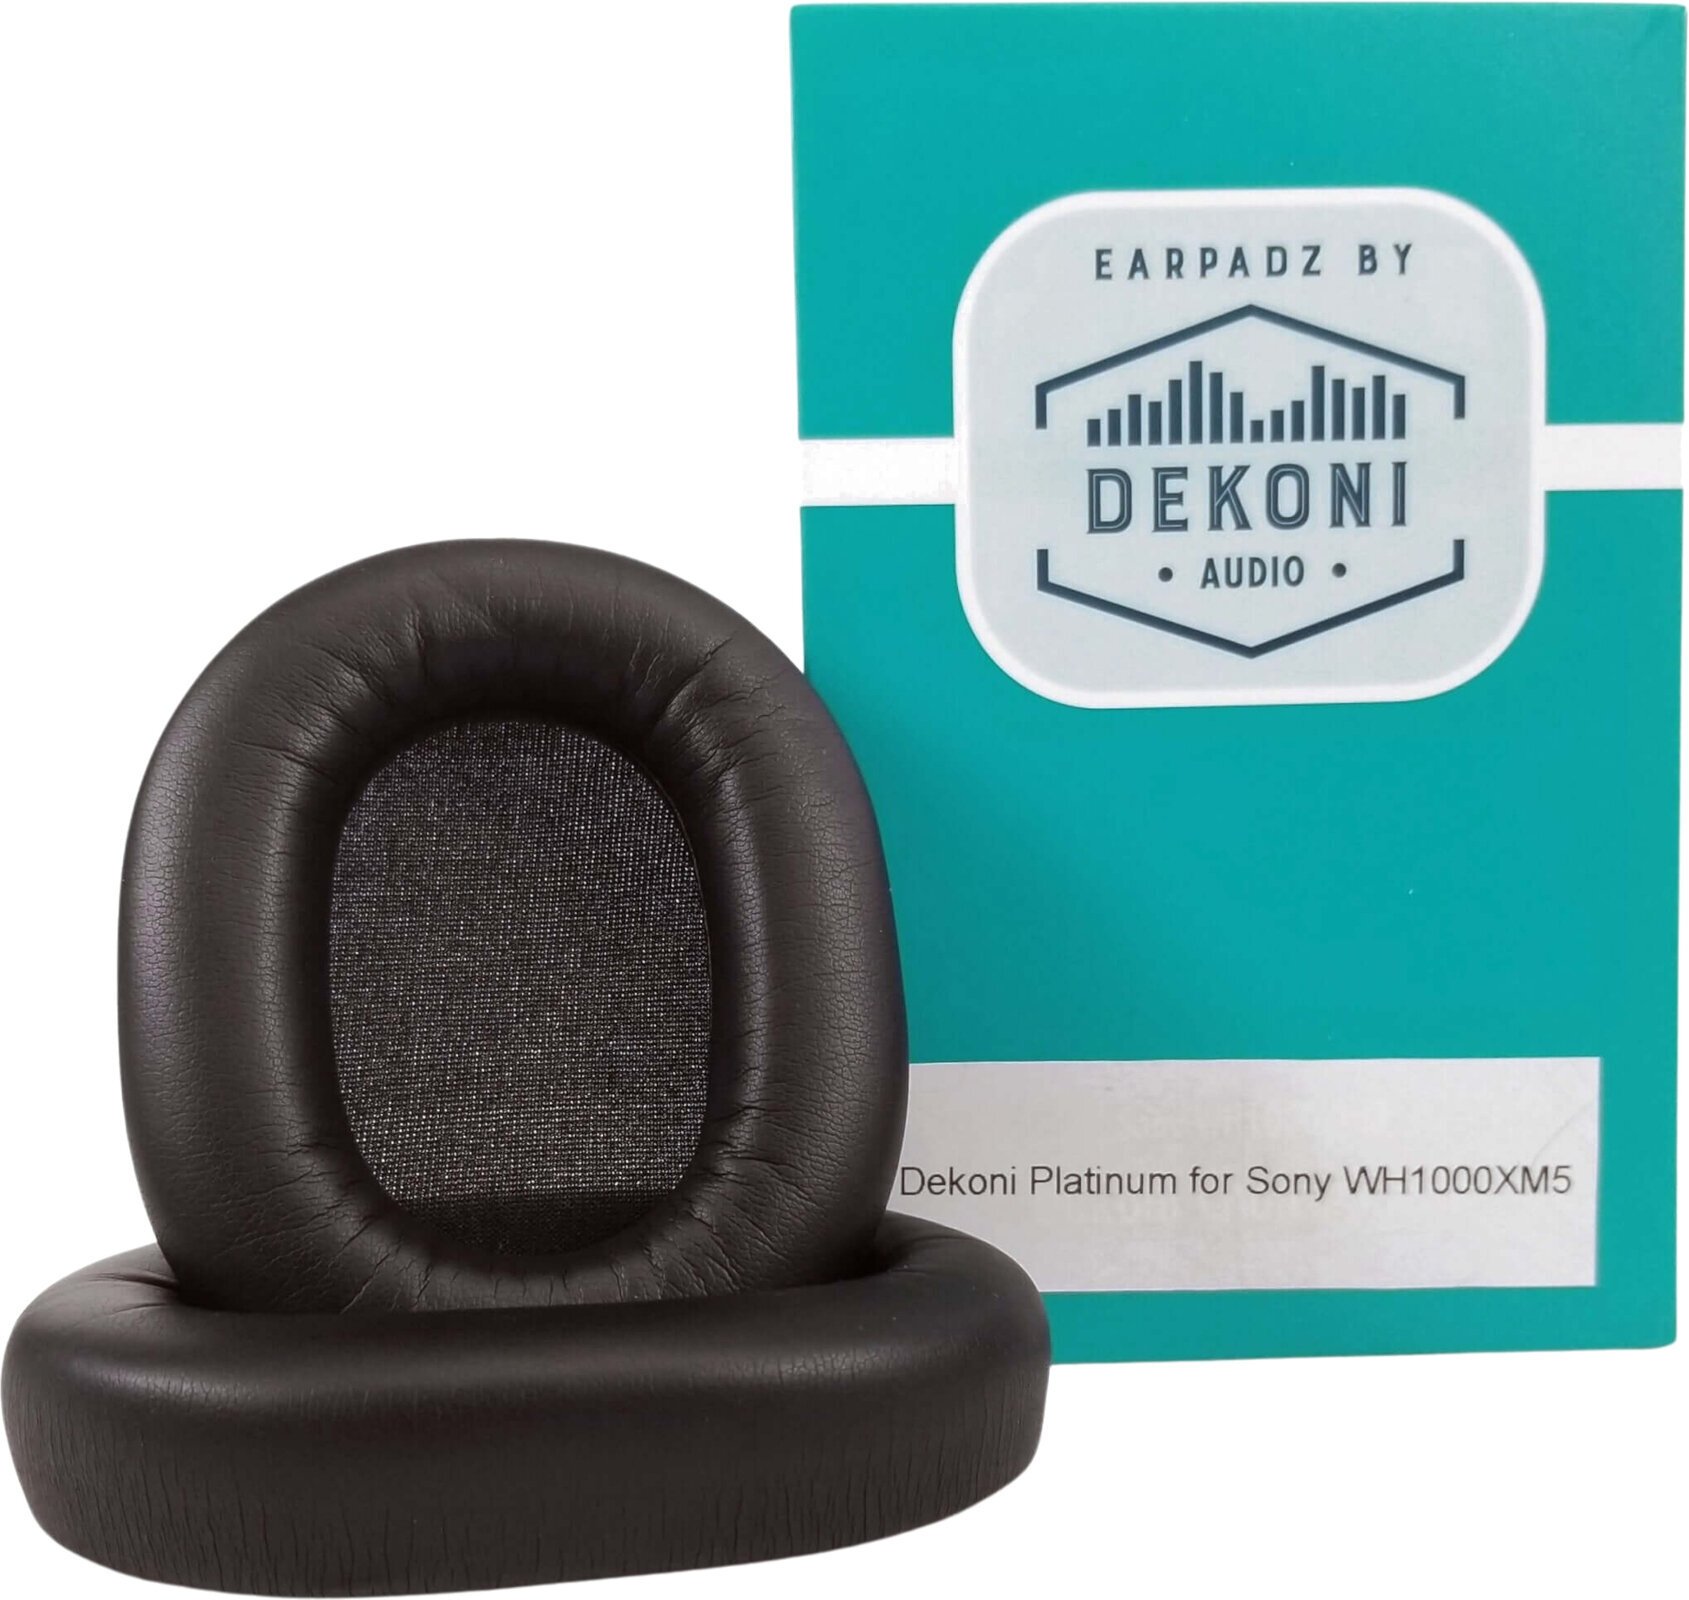 Ear Pads for headphones Dekoni Audio EPZ-XM5-PL Ear Pads for headphones Black